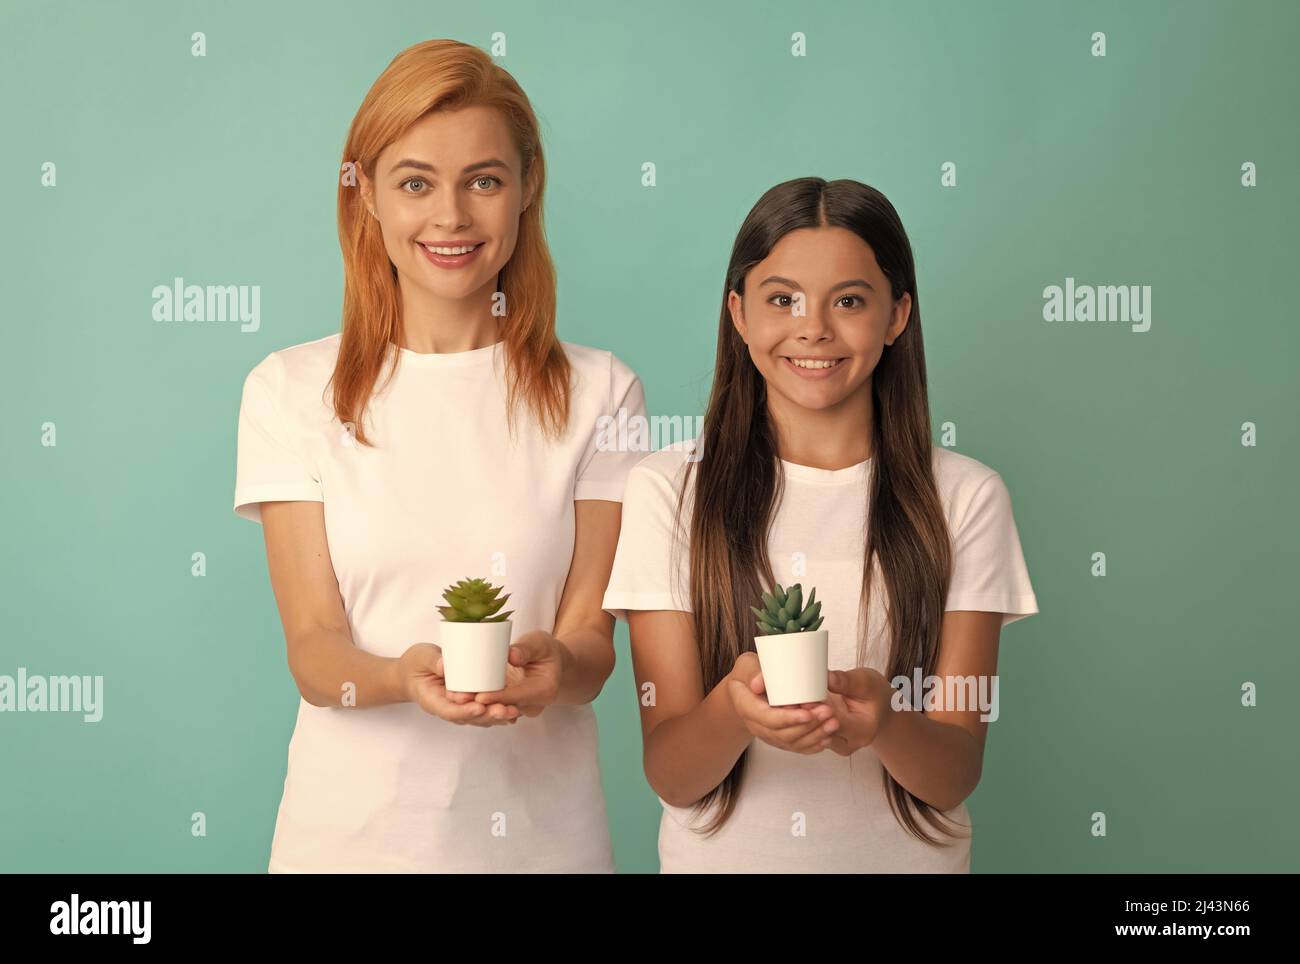 Glückliche Adoptivfamilie von adoptierten Tochter Kind und Frau Mutter lächeln halten Zimmerpflanzen, Adoption Stockfoto